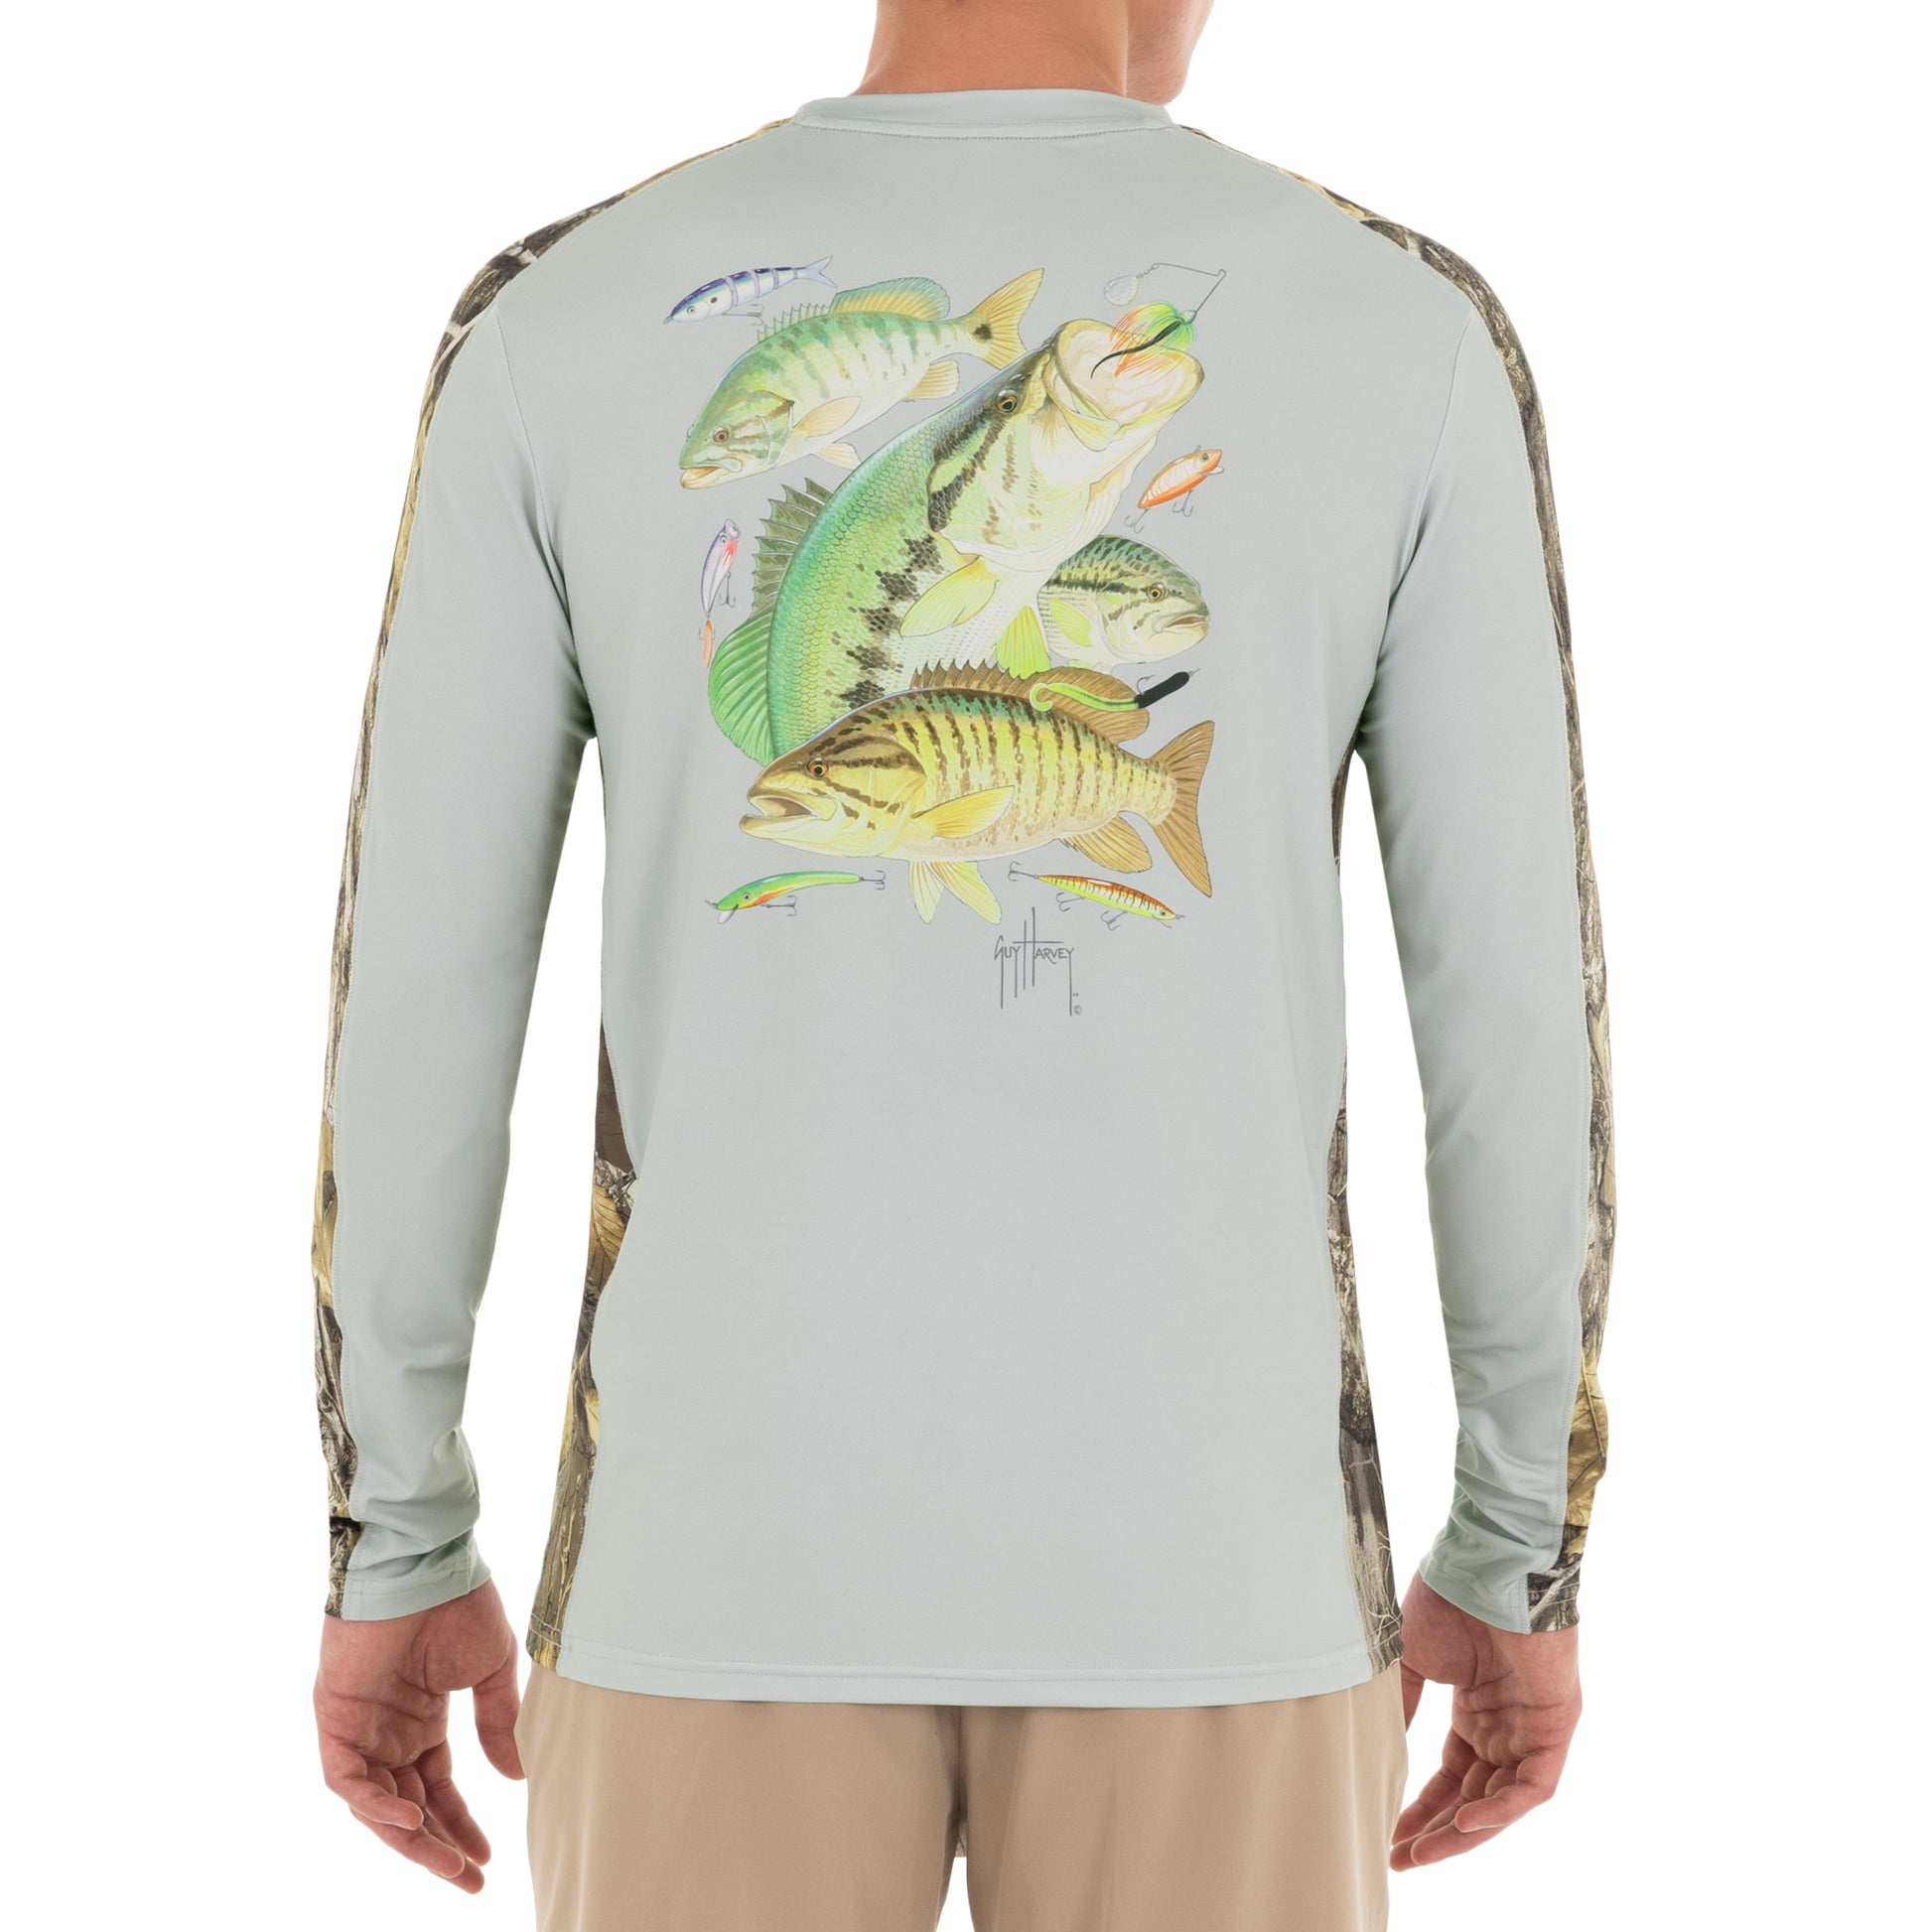 Bass Fishing T Shirts For Men - Band Shirt - Shirt Low Price